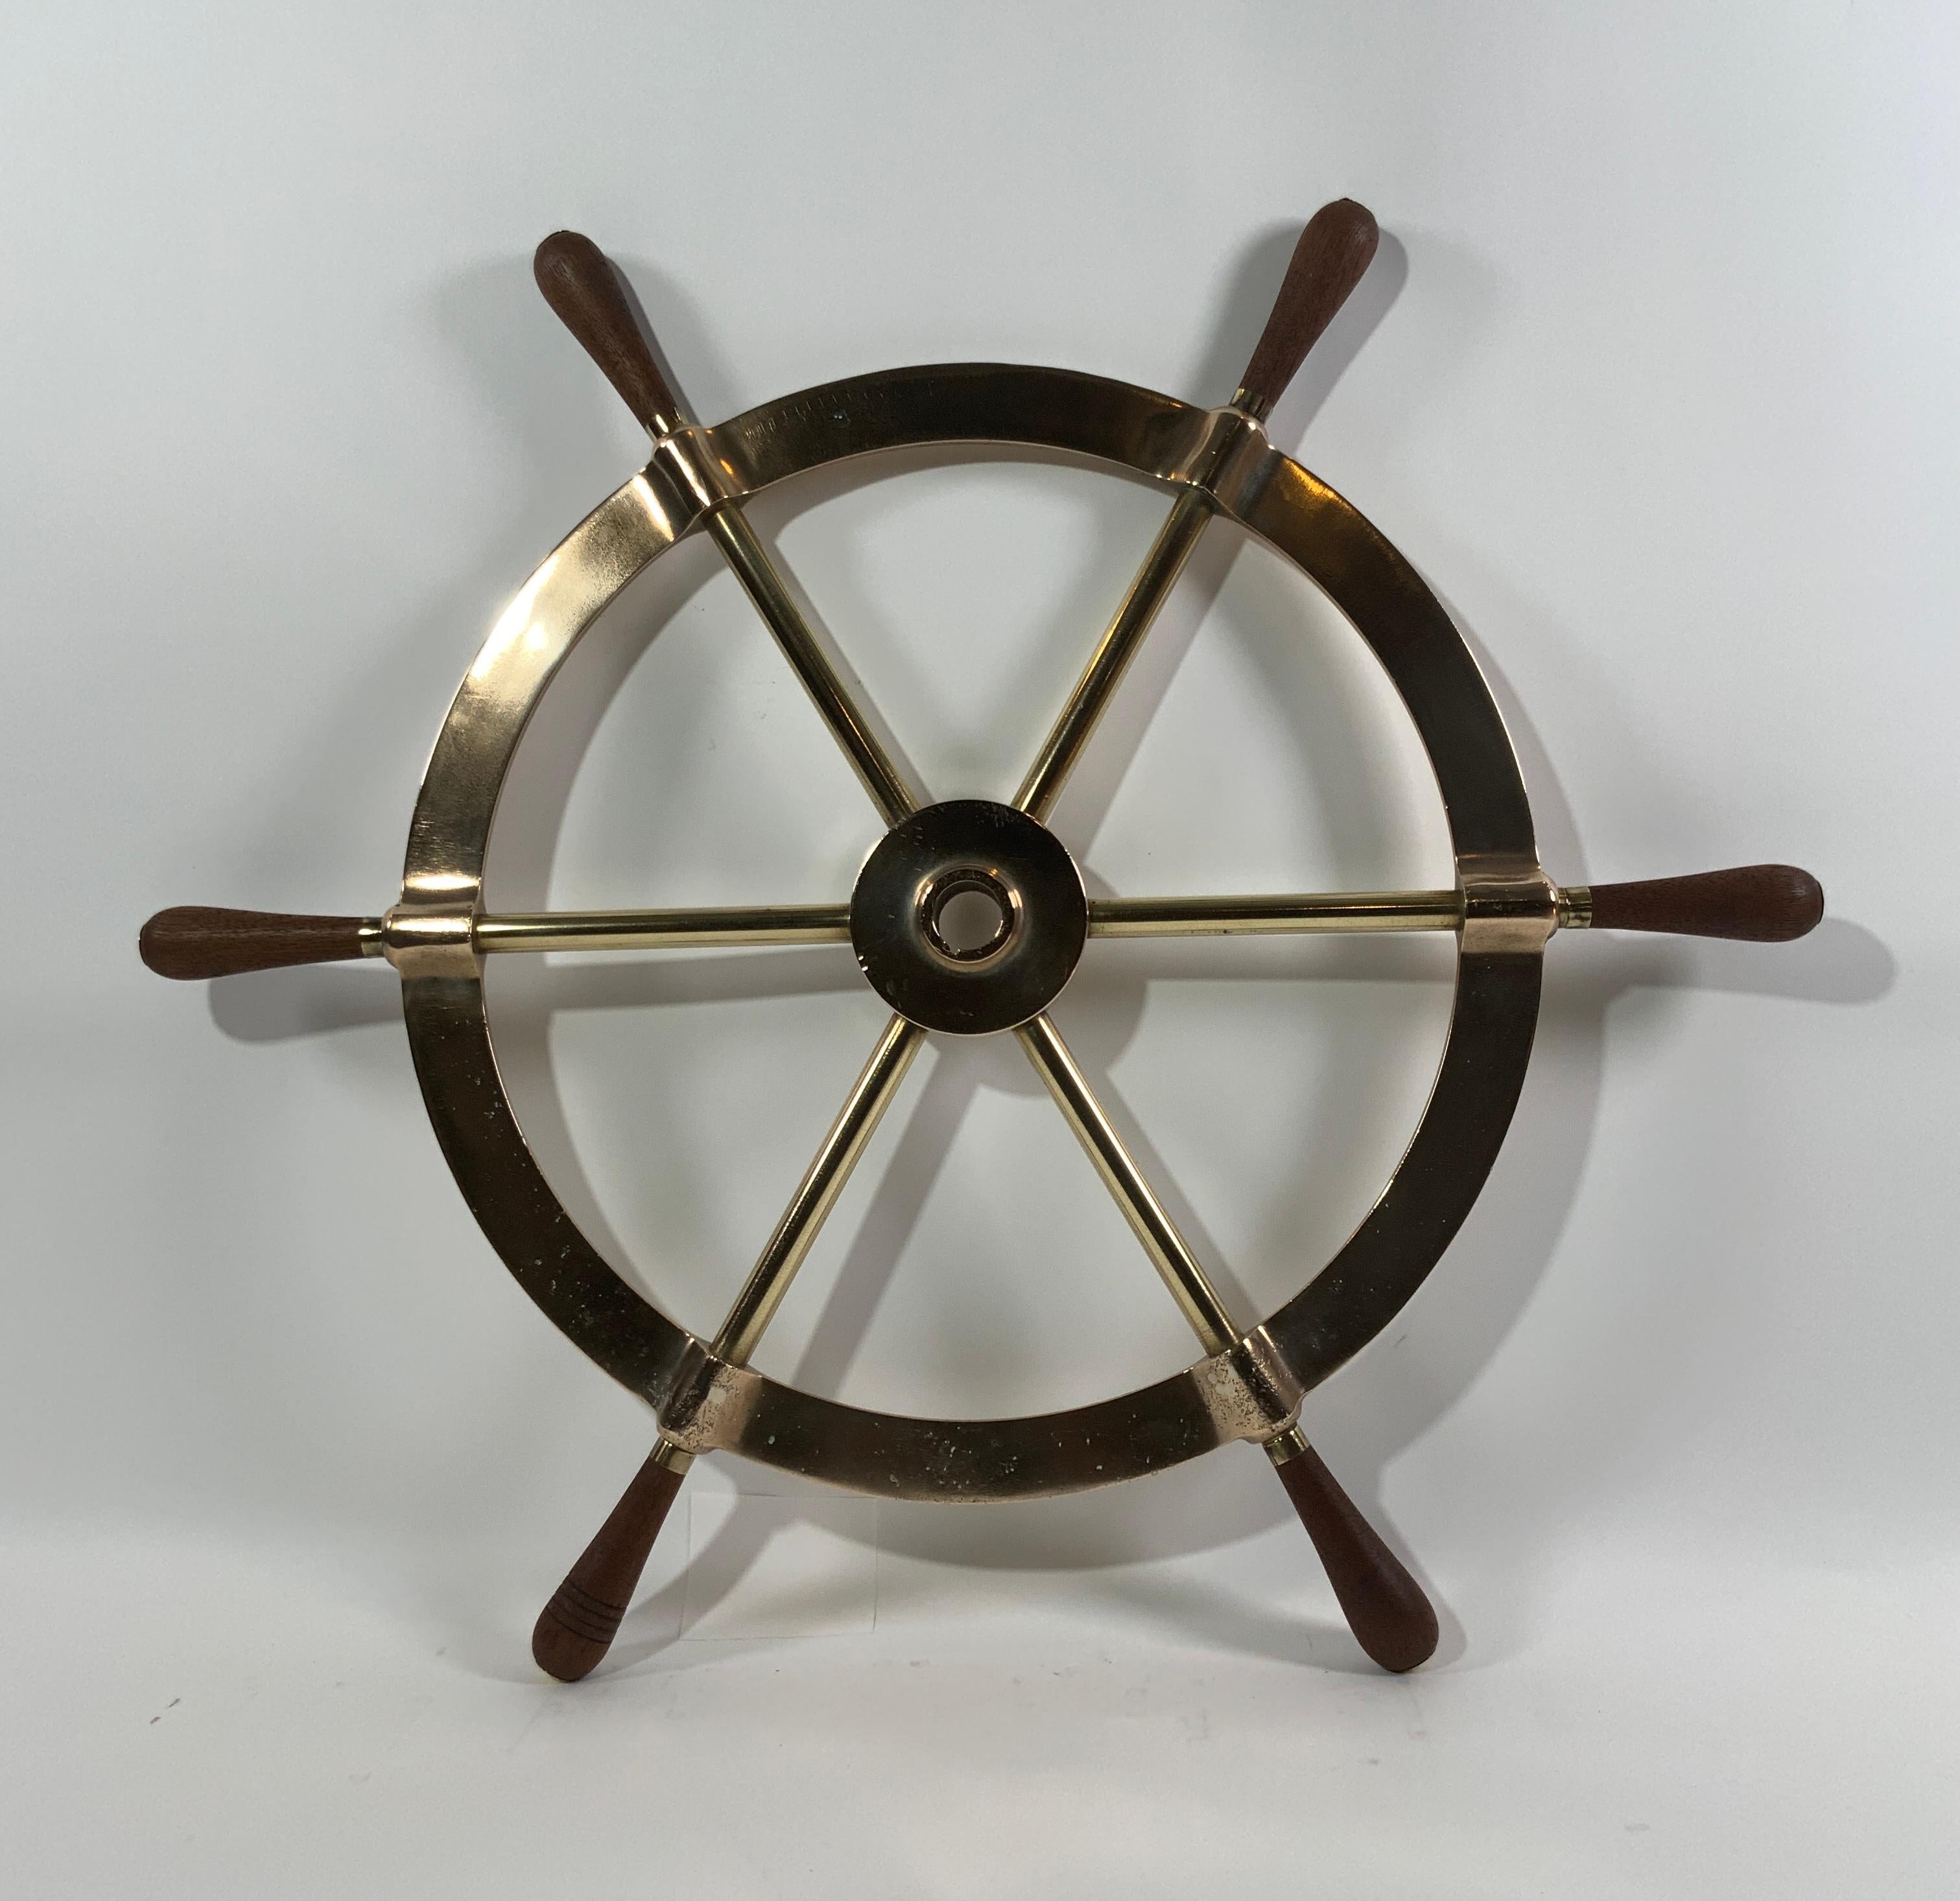 Six Spoke Solid Brass Yacht Wheel For Sale 4